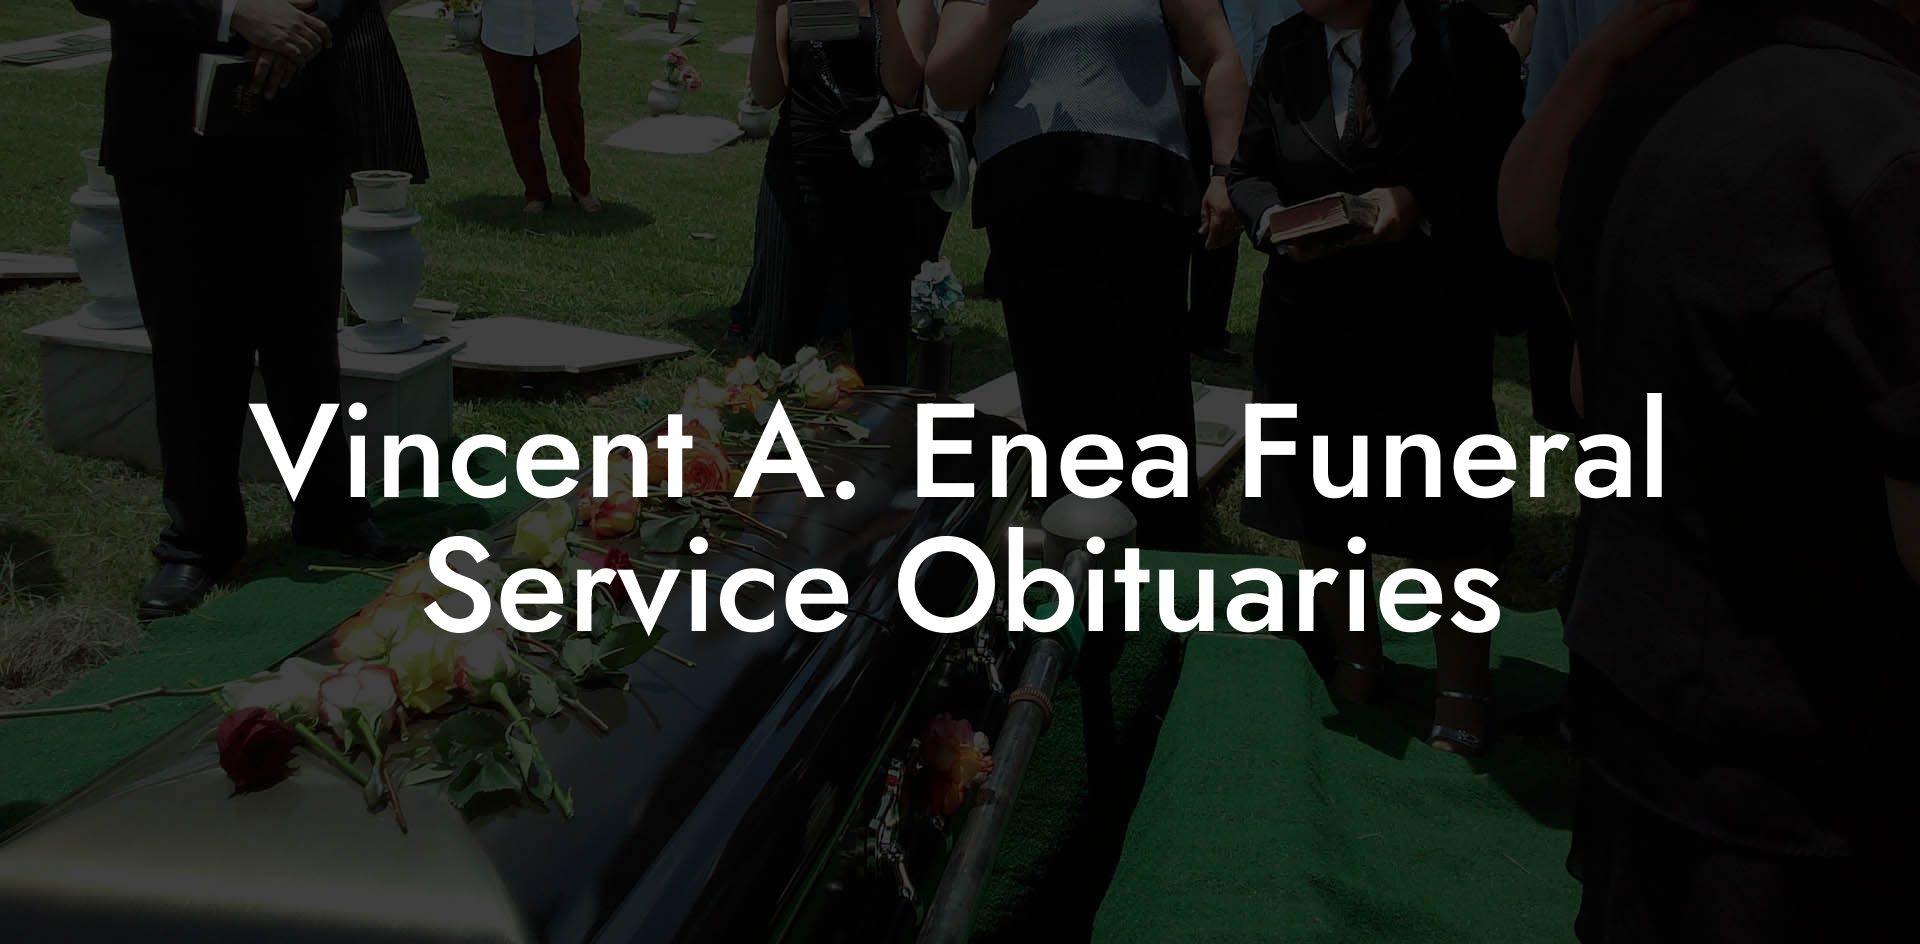 Vincent A. Enea Funeral Service Obituaries